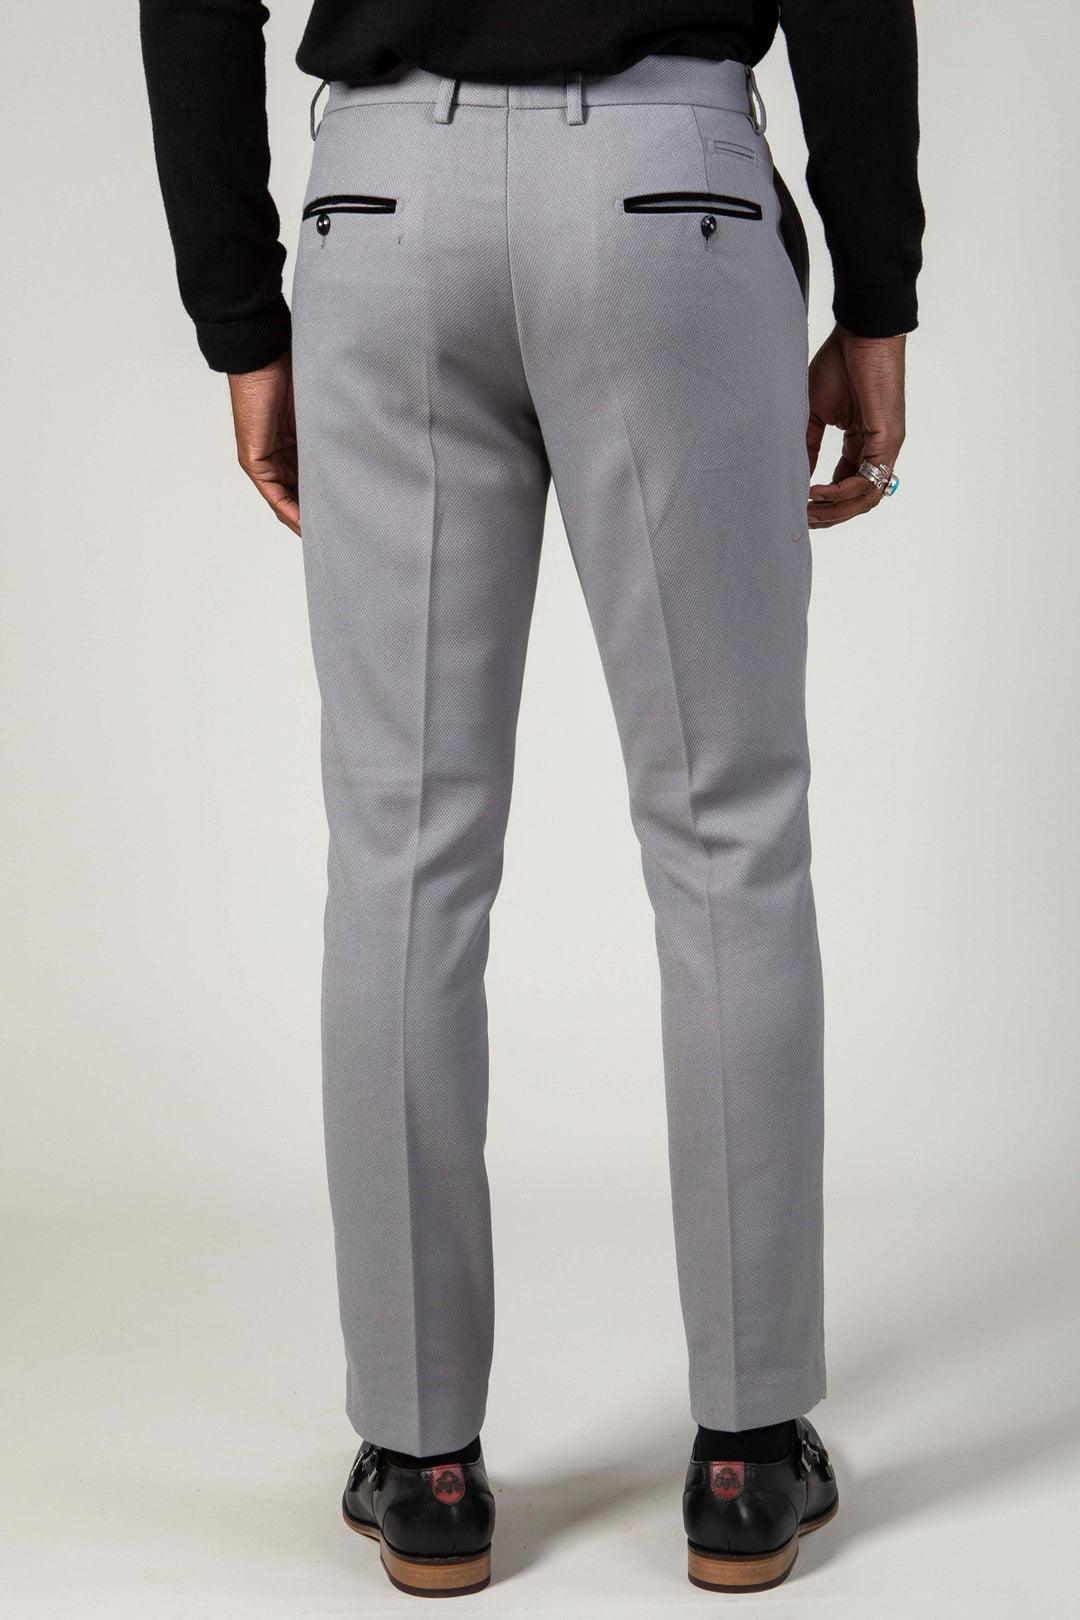 EDWIN - Silver Grey Trousers